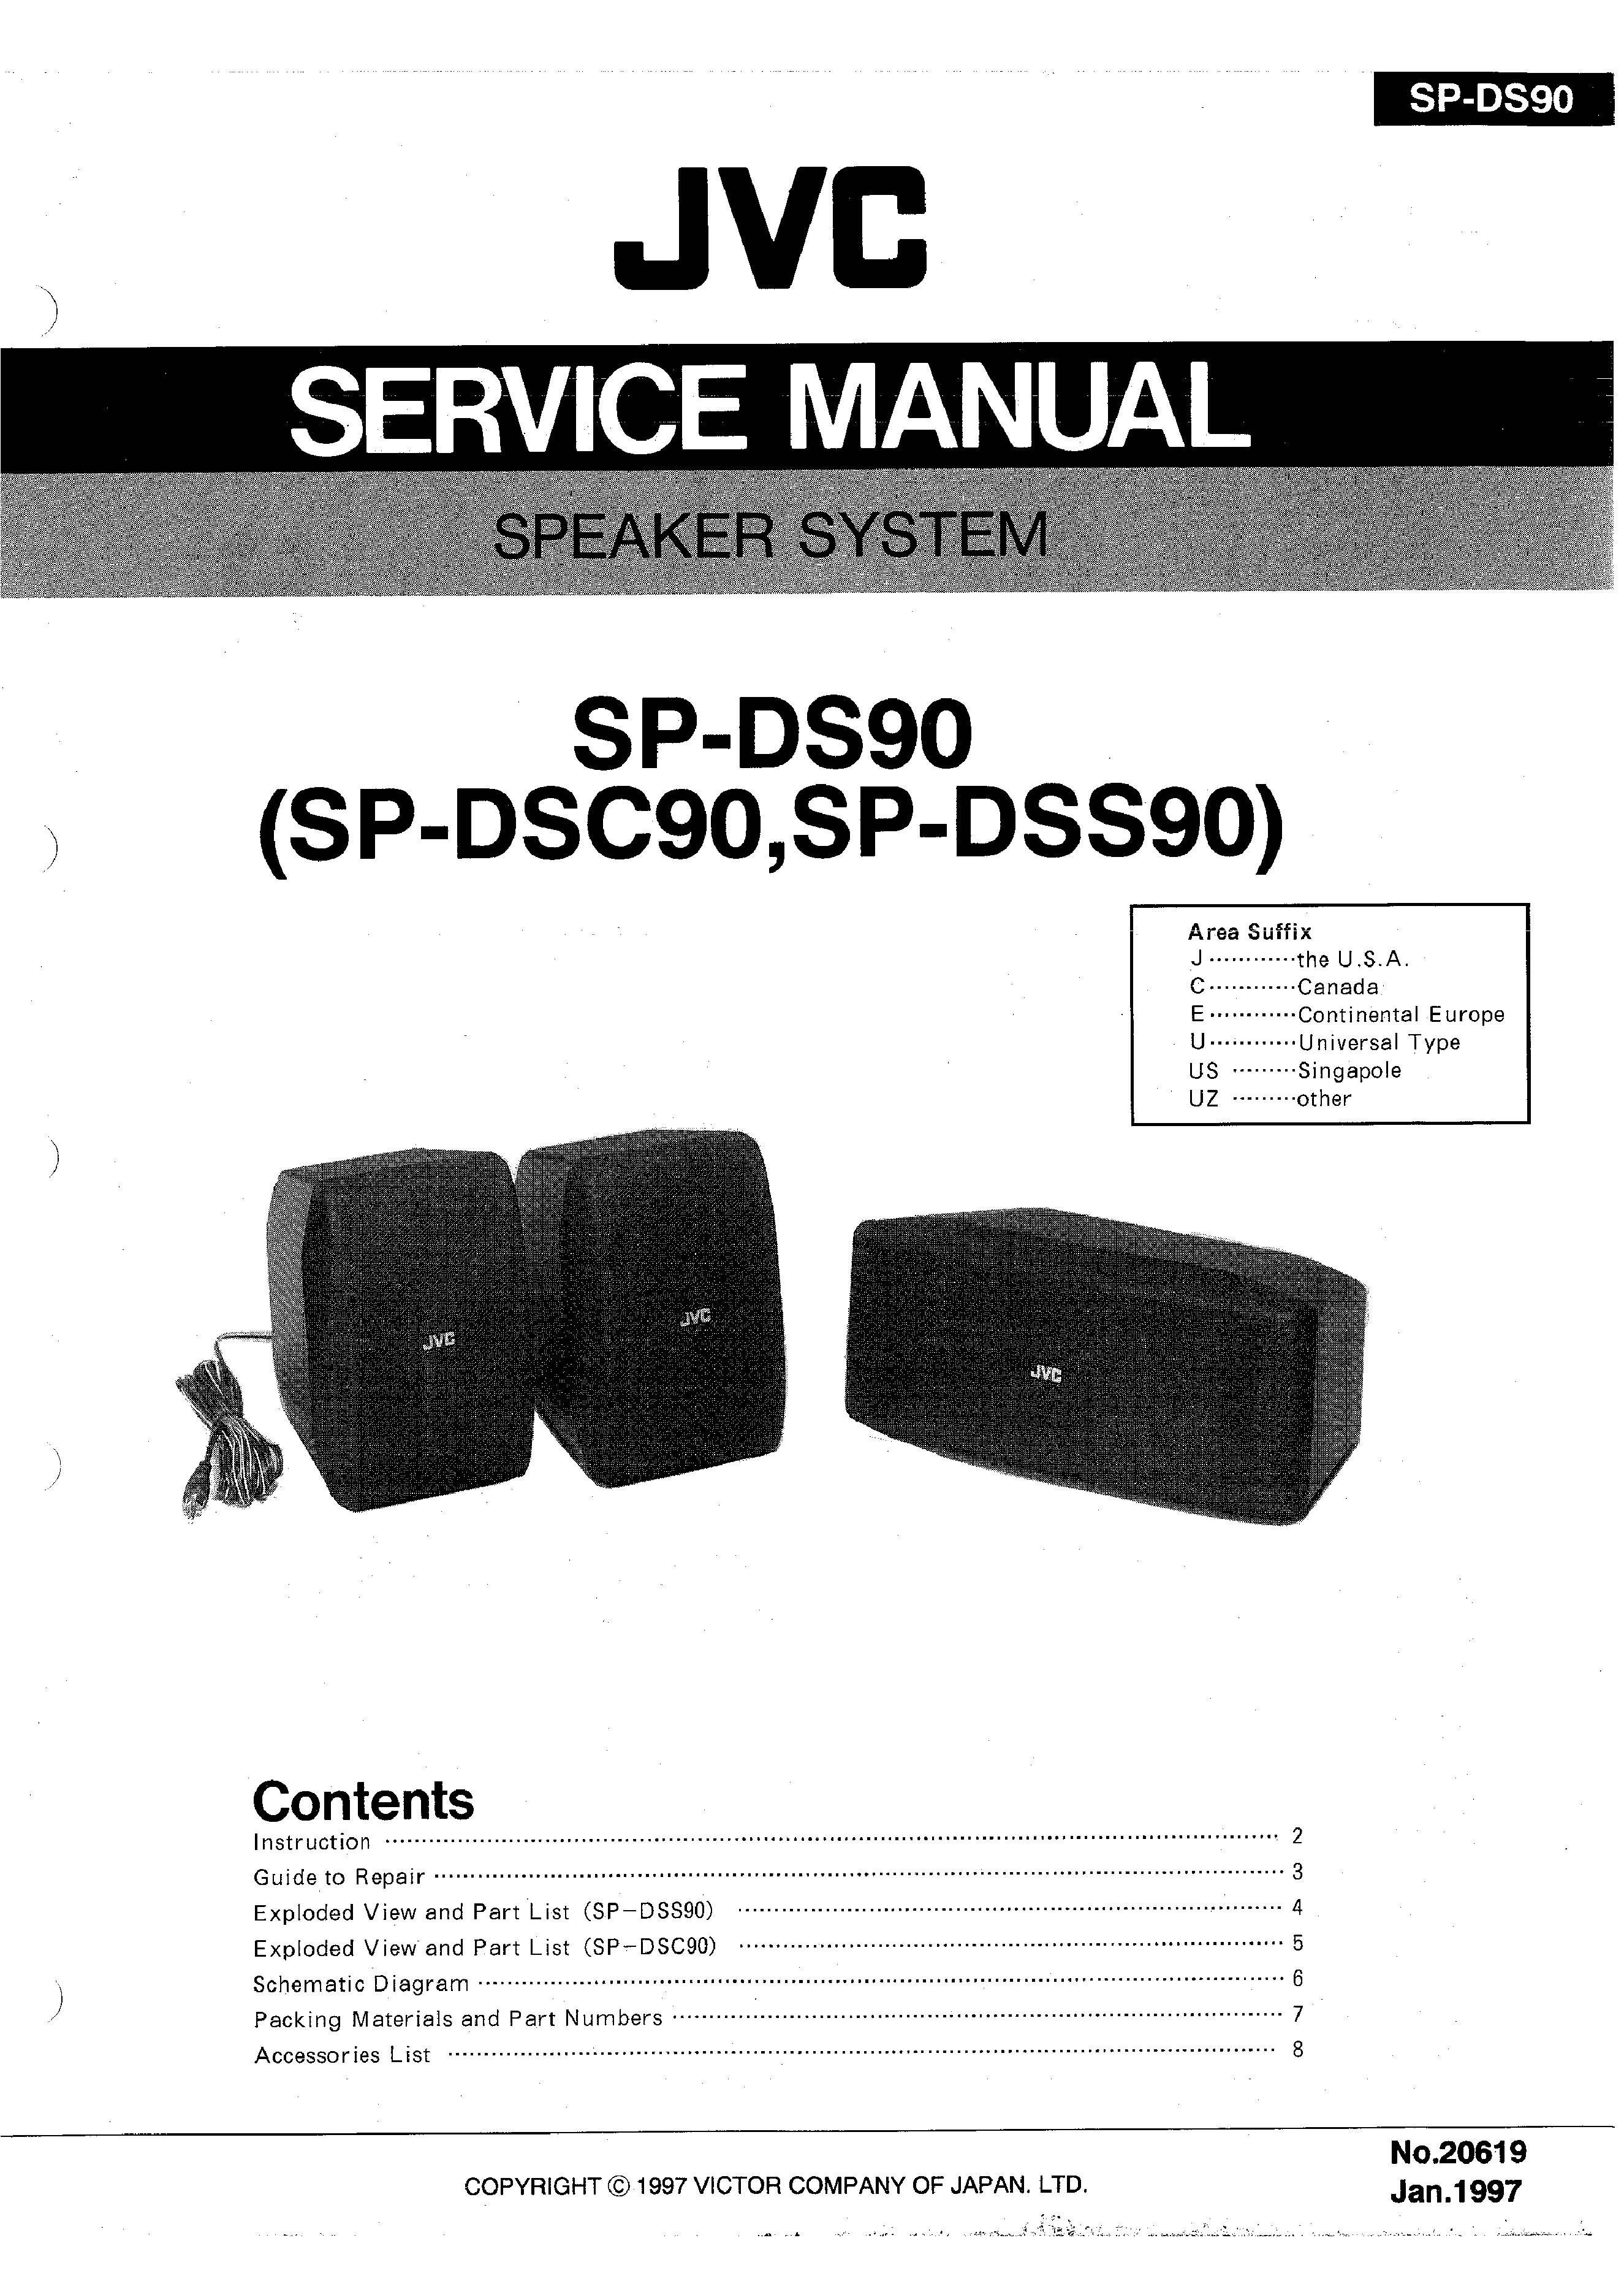 JVC SP-DS90 (DSC90)